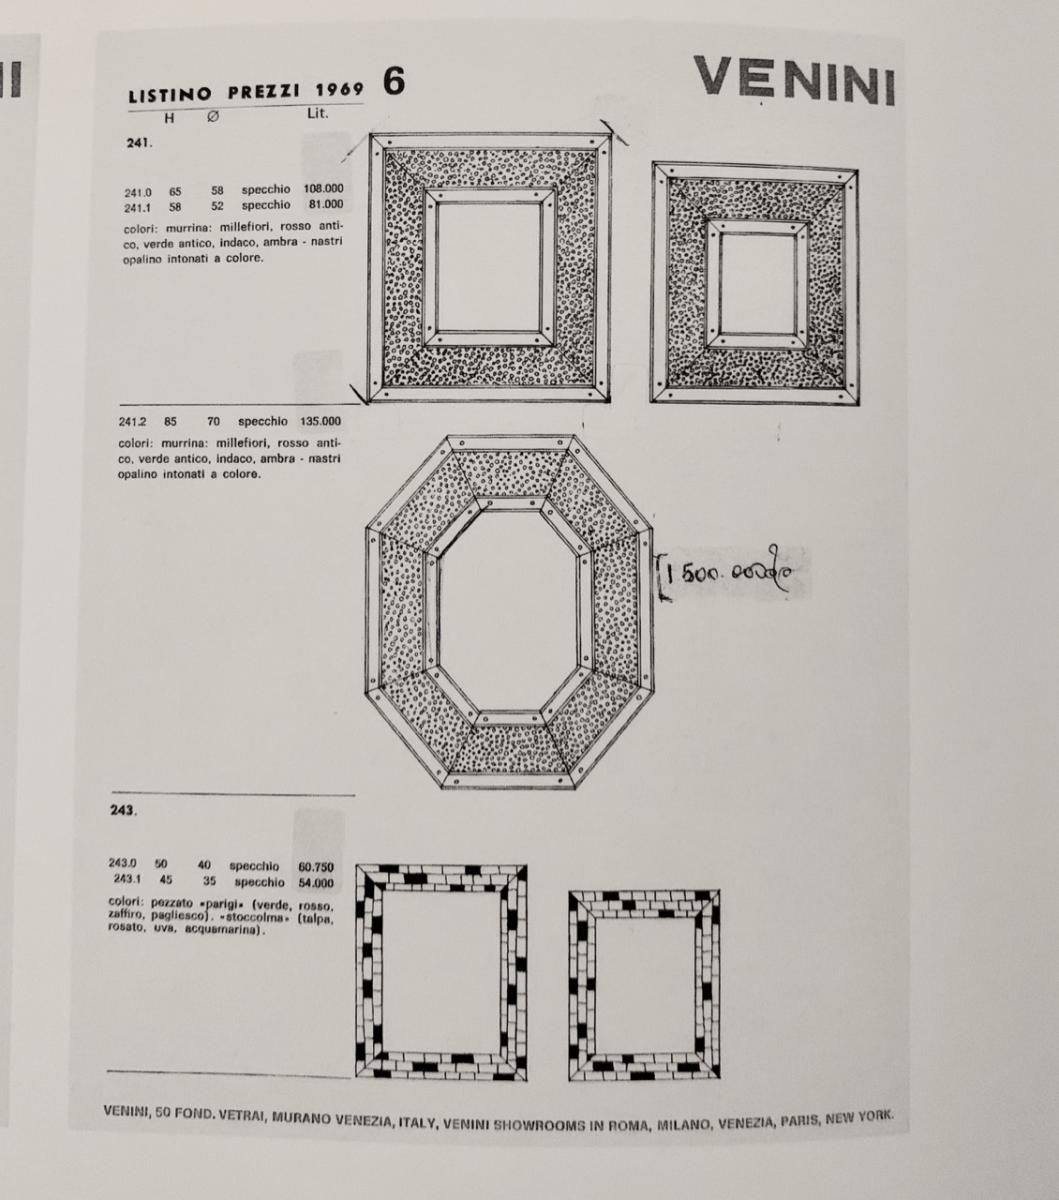 excerpt from Veninis catalogue raisonné